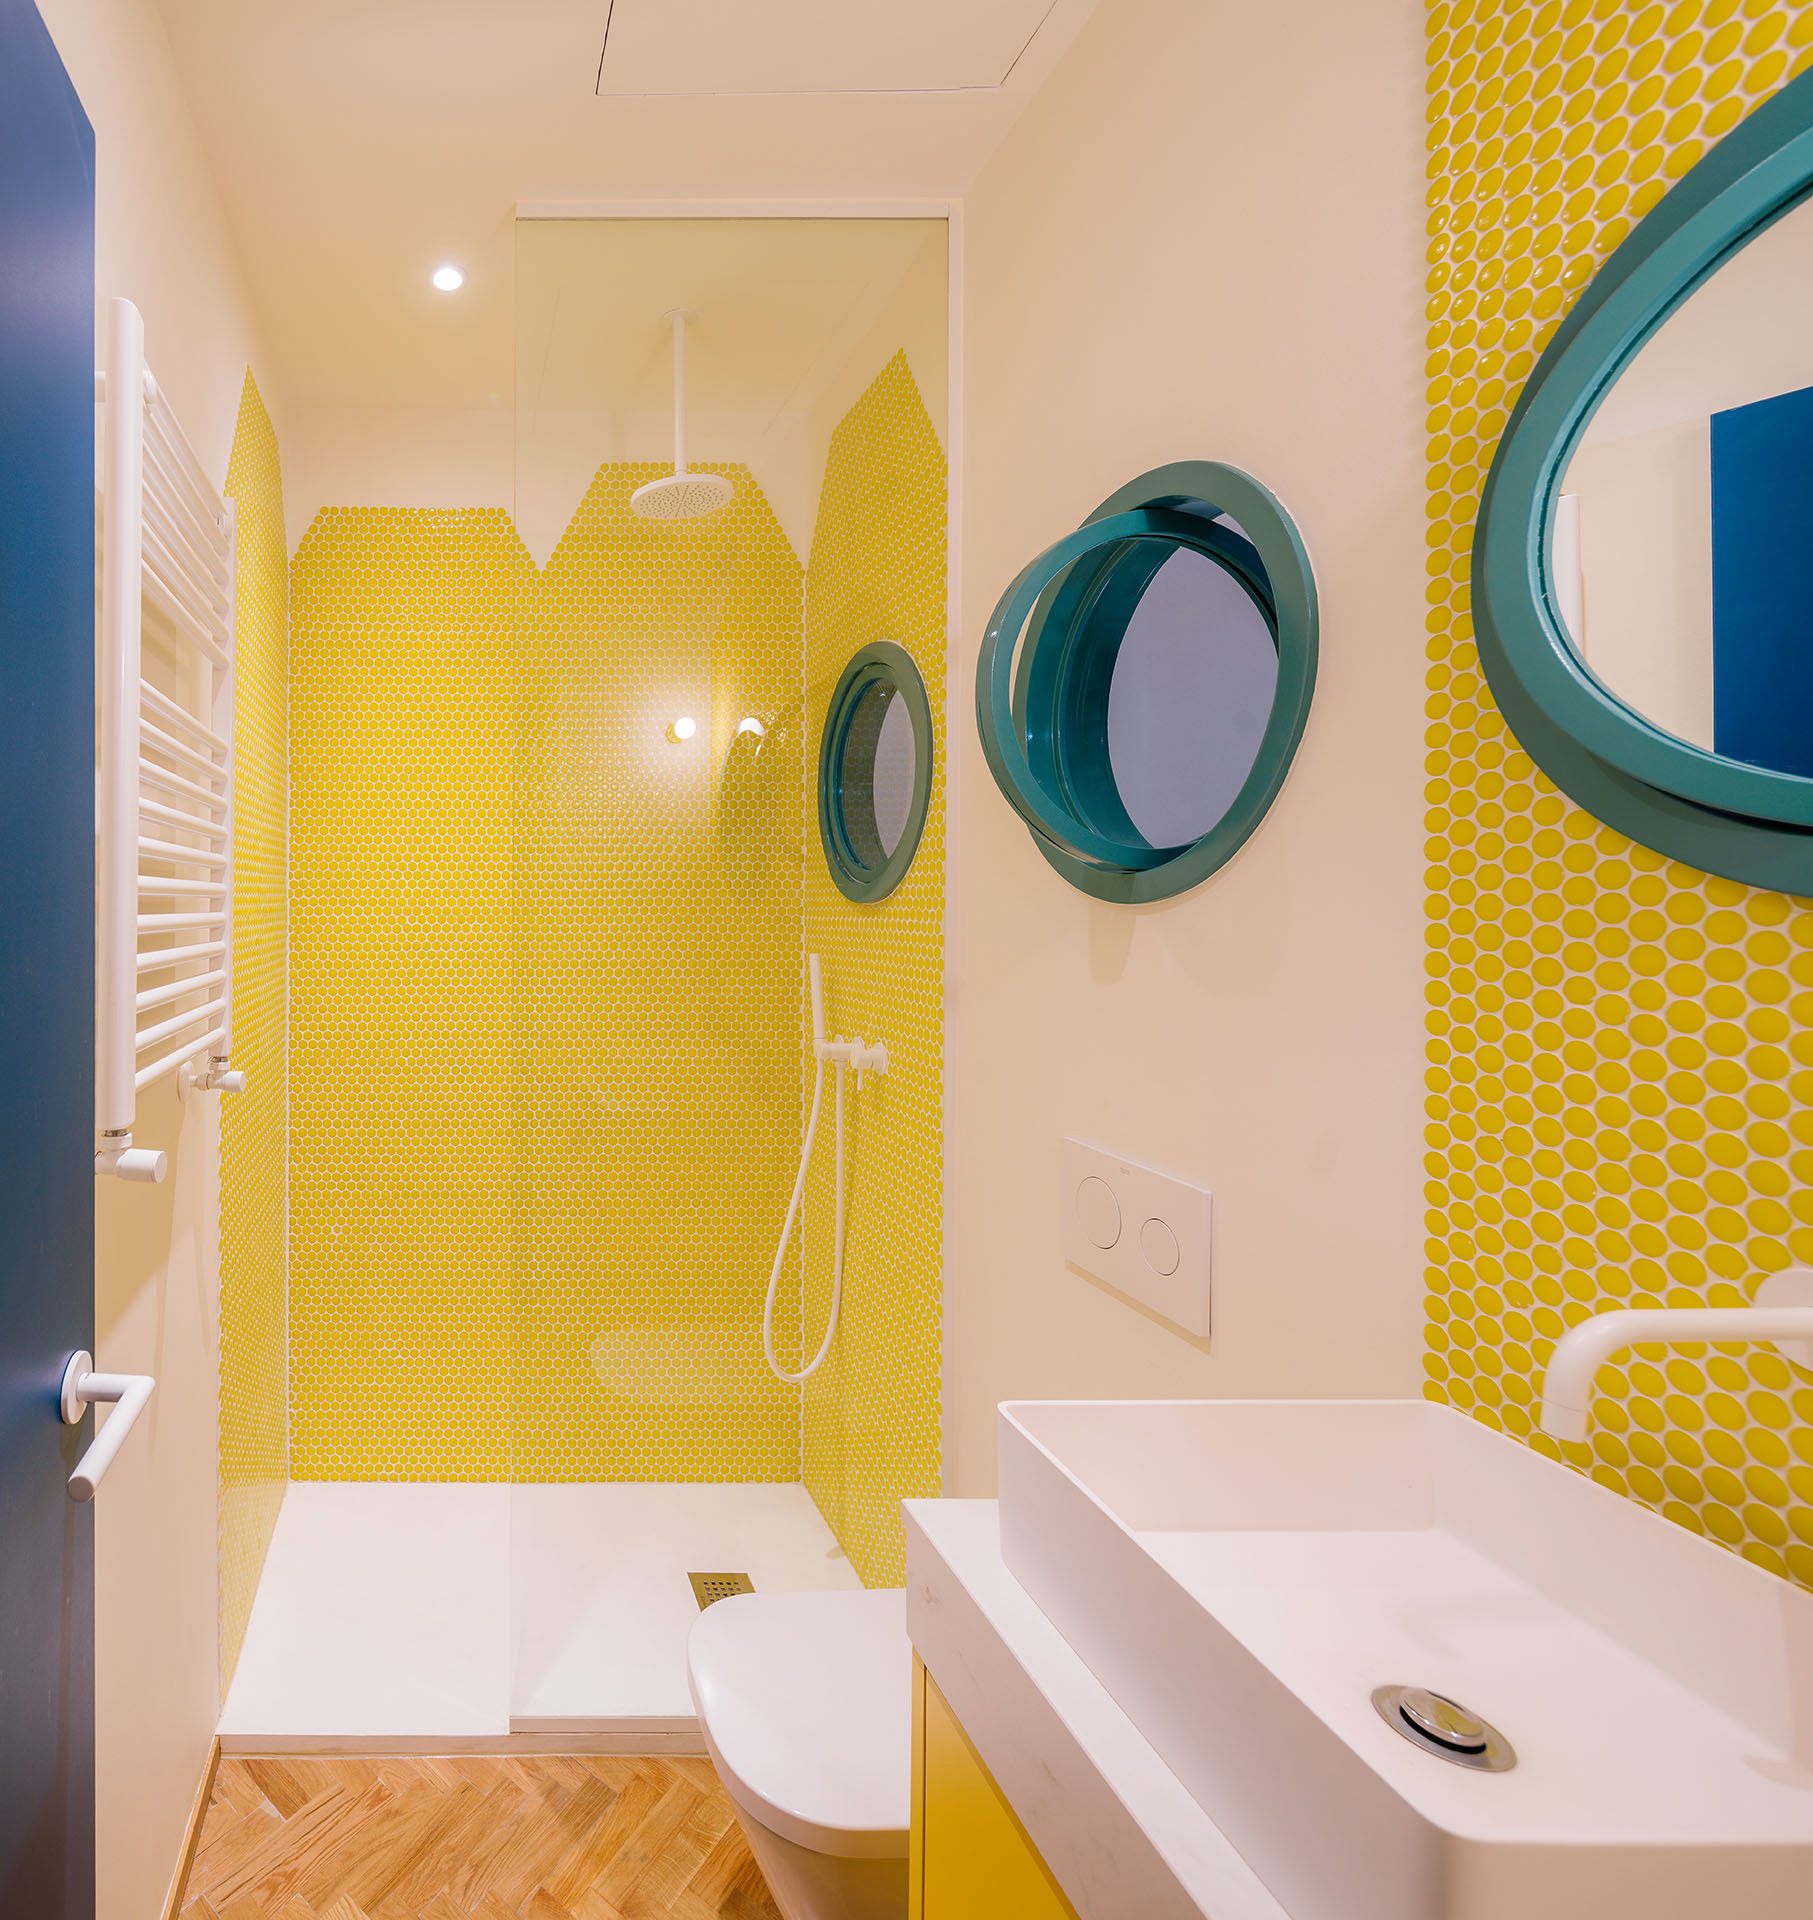 Baño con parees en amarillo y ventanas redondas con marco en azul turquesa.